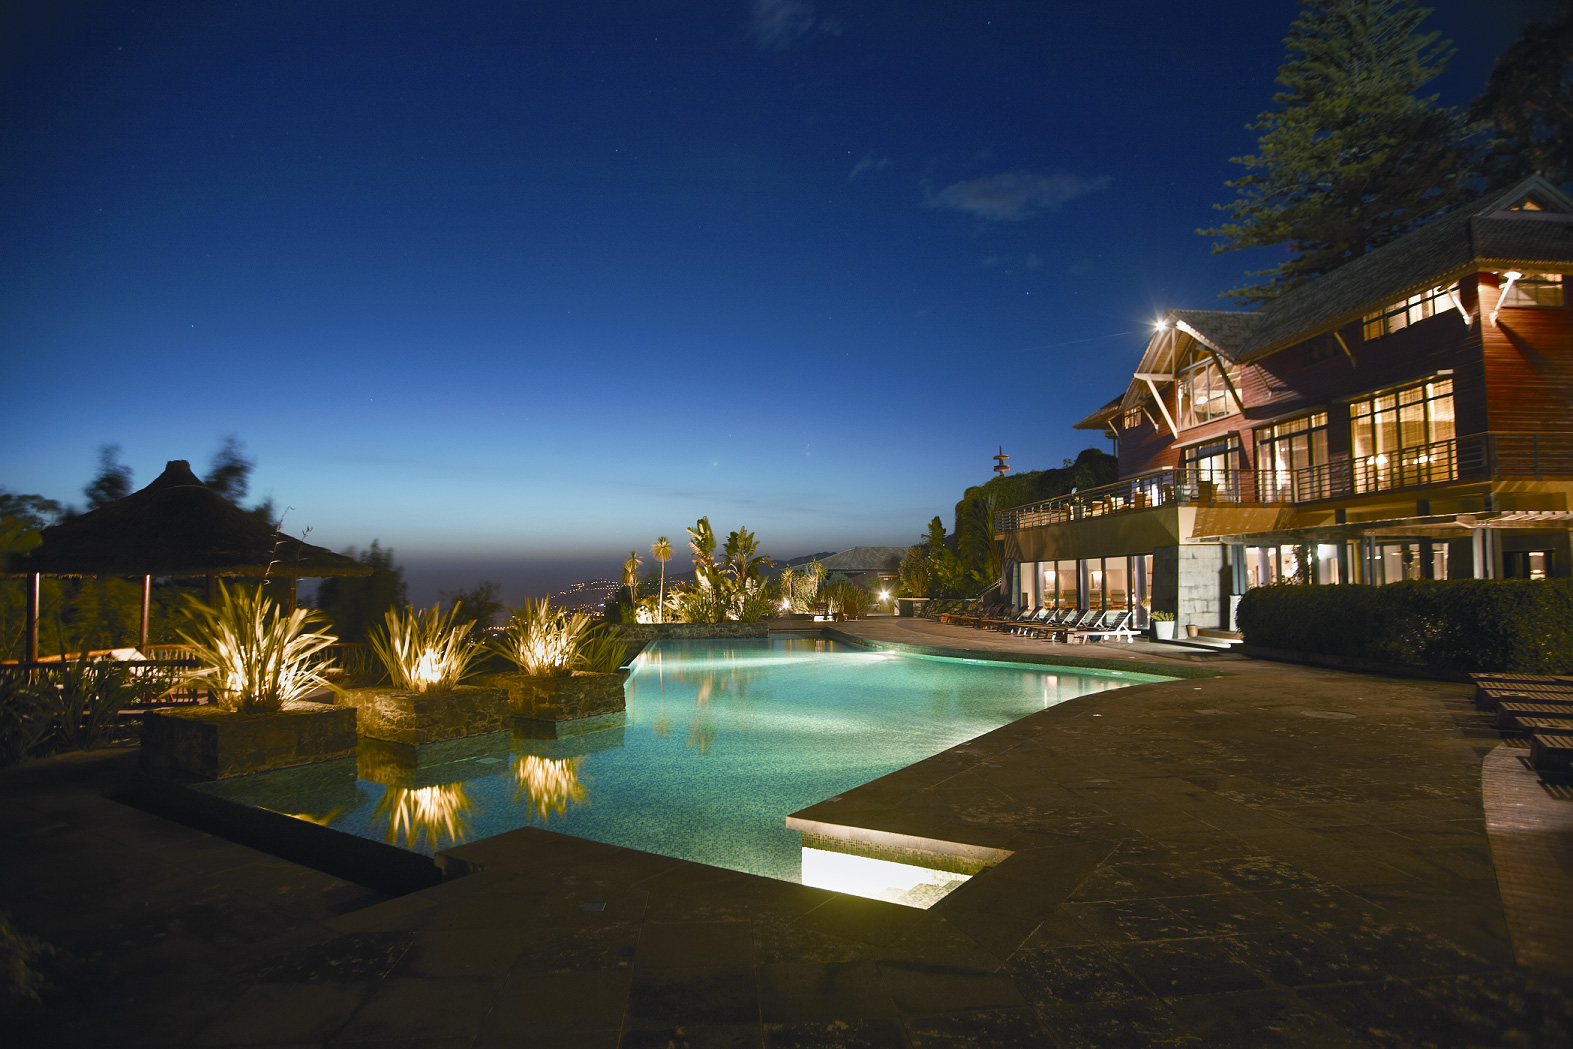 Choupana Hills no sólo ofrece las maravillas de un spa sino también todas las comodidades de un hotel 5 estrellas (clickear para agrandar imagen). Foto: Choupana Spa